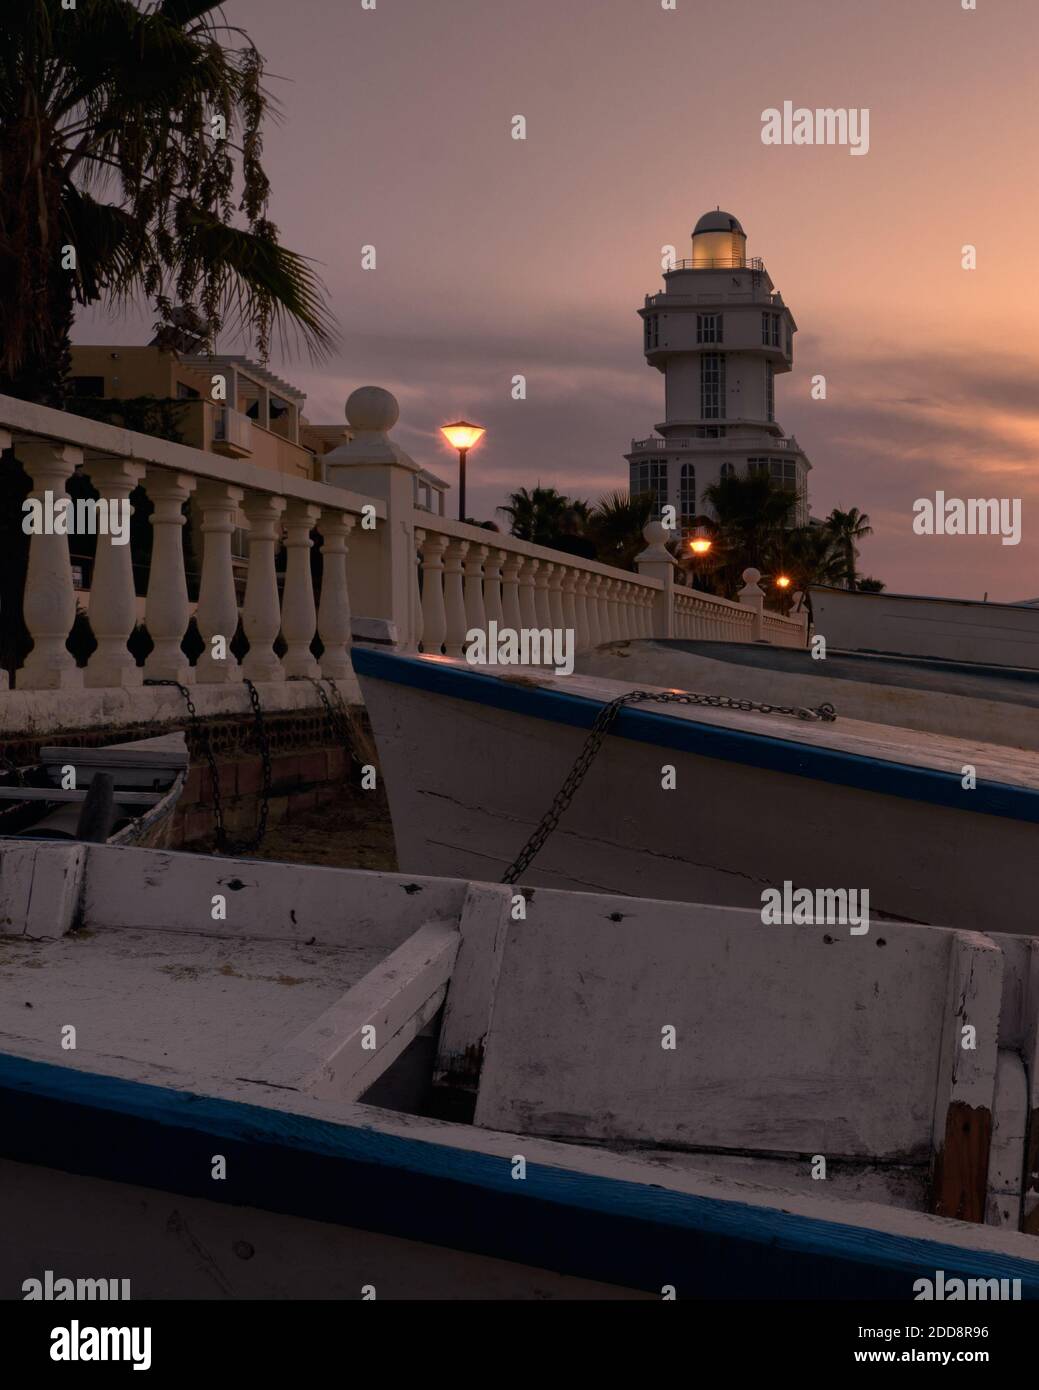 Faro de Isla Cristina al atardecer, en los alrrededores un paseo con farolas y unas barcas. Stock Photo